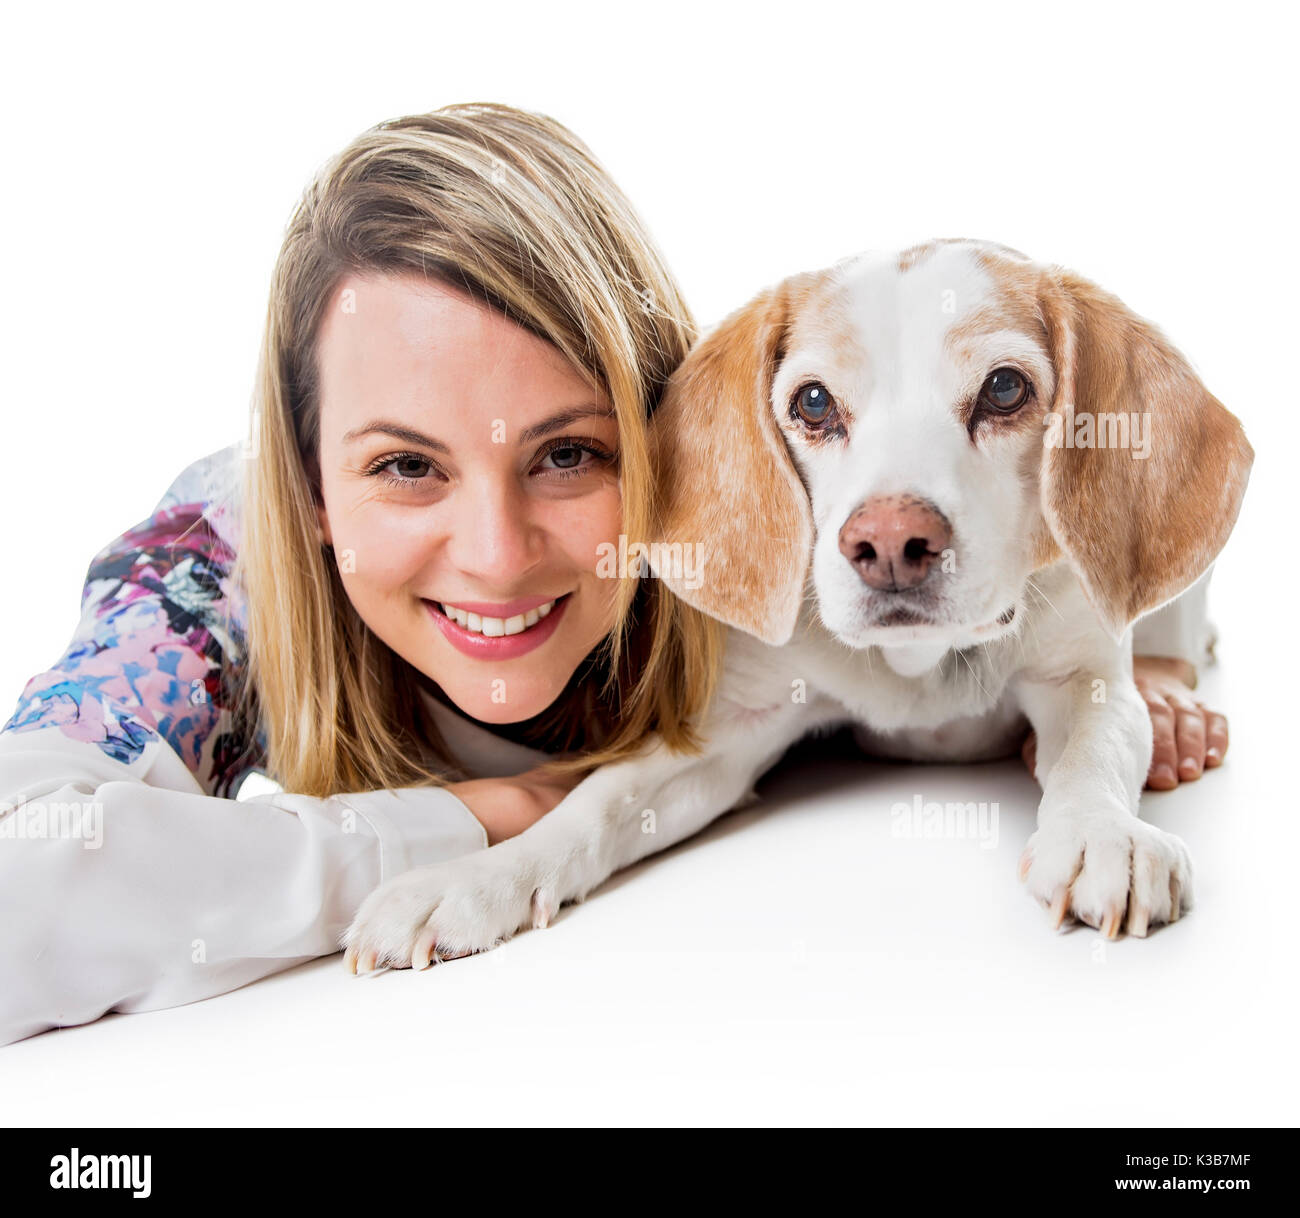 Femme avec chien posent en studio - isolé sur fond blanc Banque D'Images